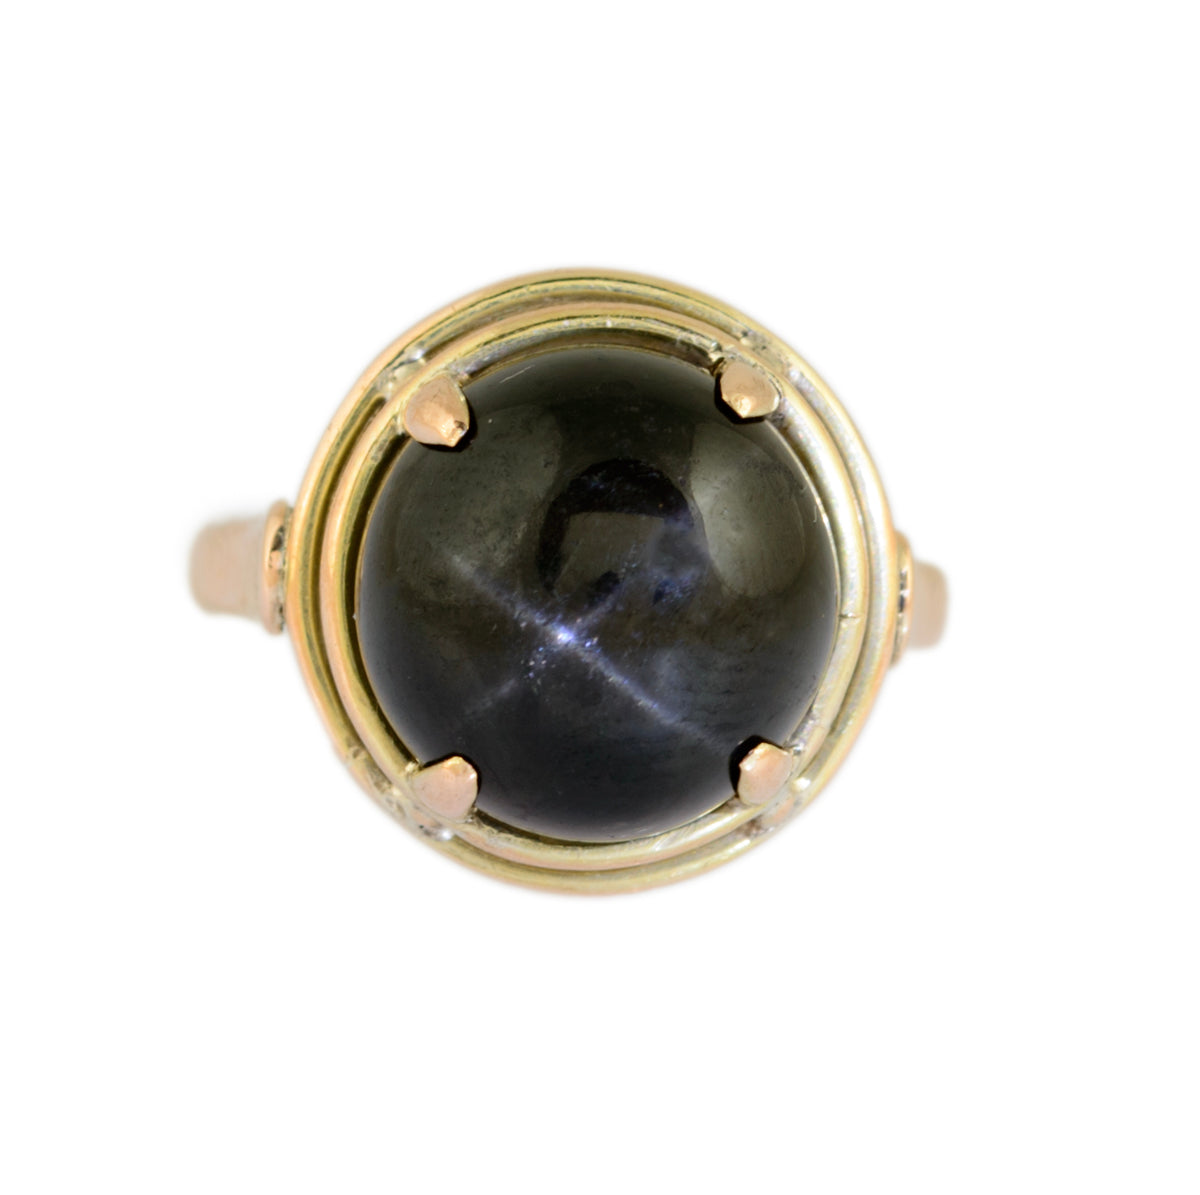 Vintage 9ct Gold & Black Star Diopside Cabochon Dress Ring UK Size L (A1512)